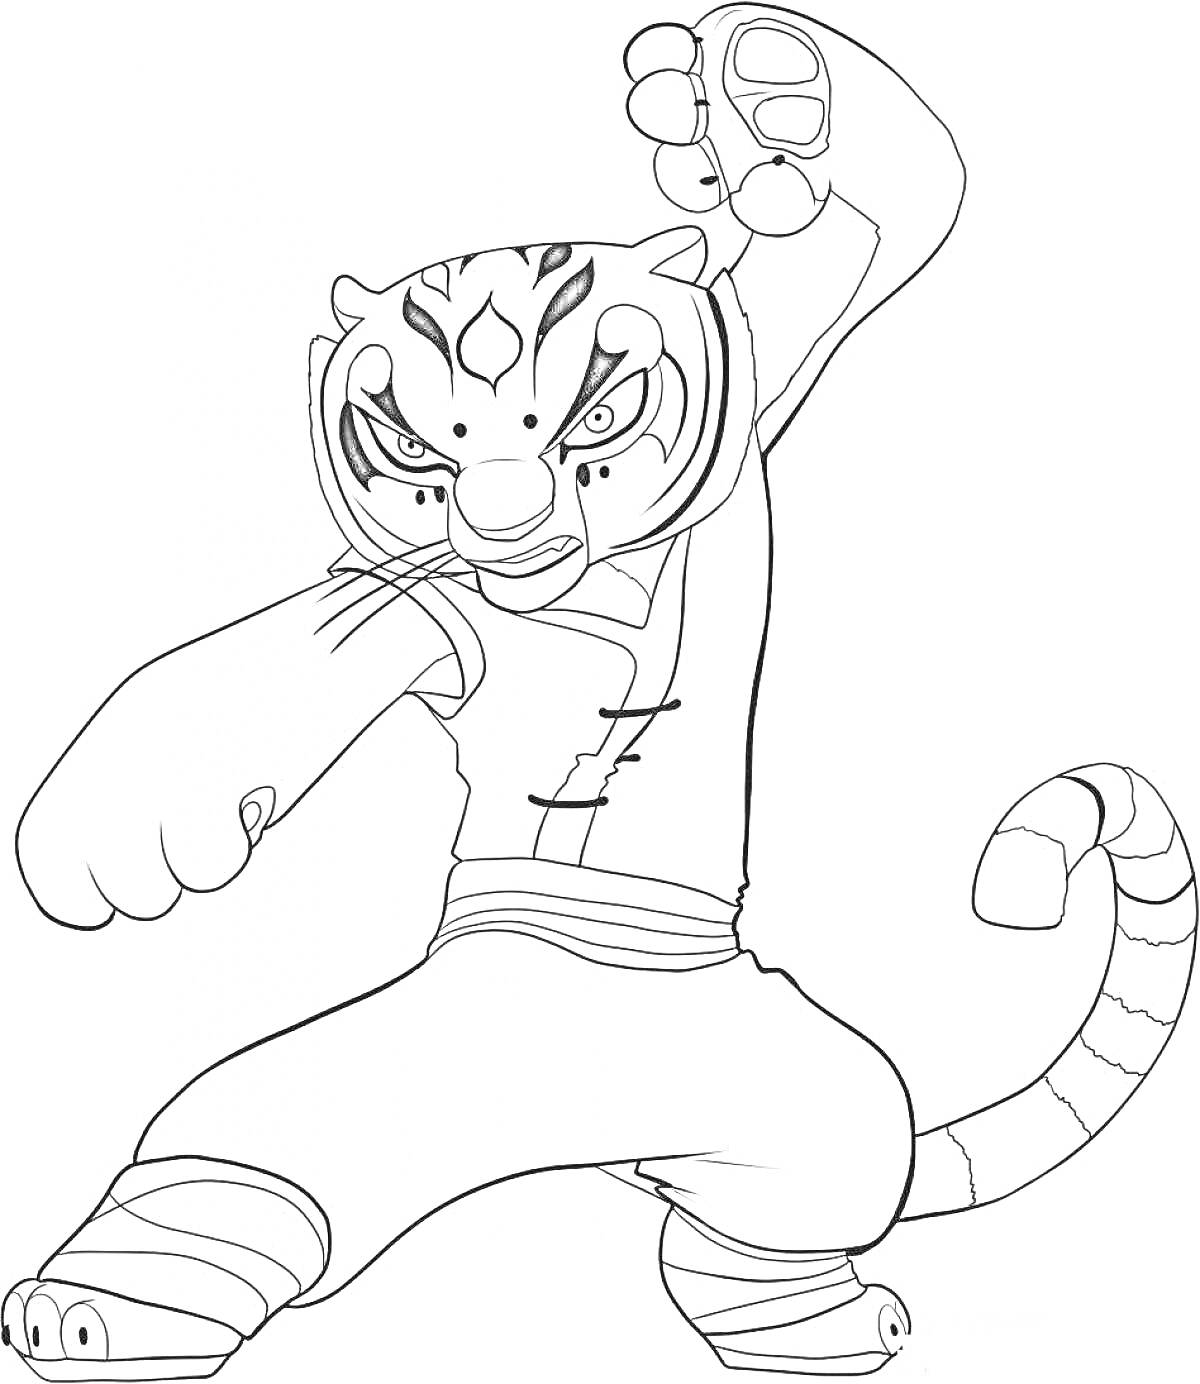 Раскраска Тигр из Гуджитсу в боевой позе с поднятым кулаком и полосатым хвостом